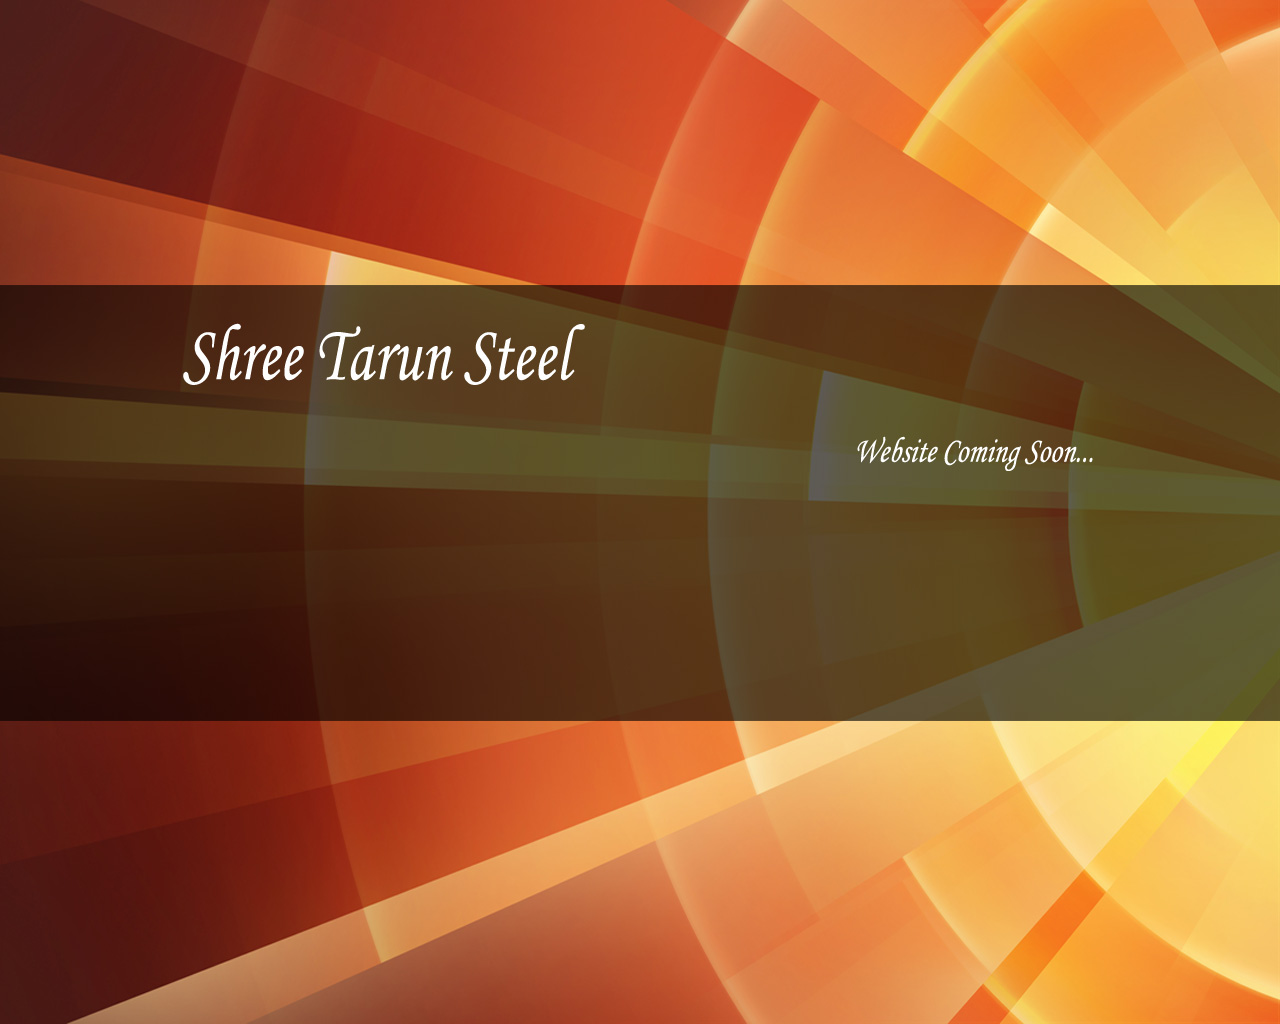 SHREE TARUN STEEL